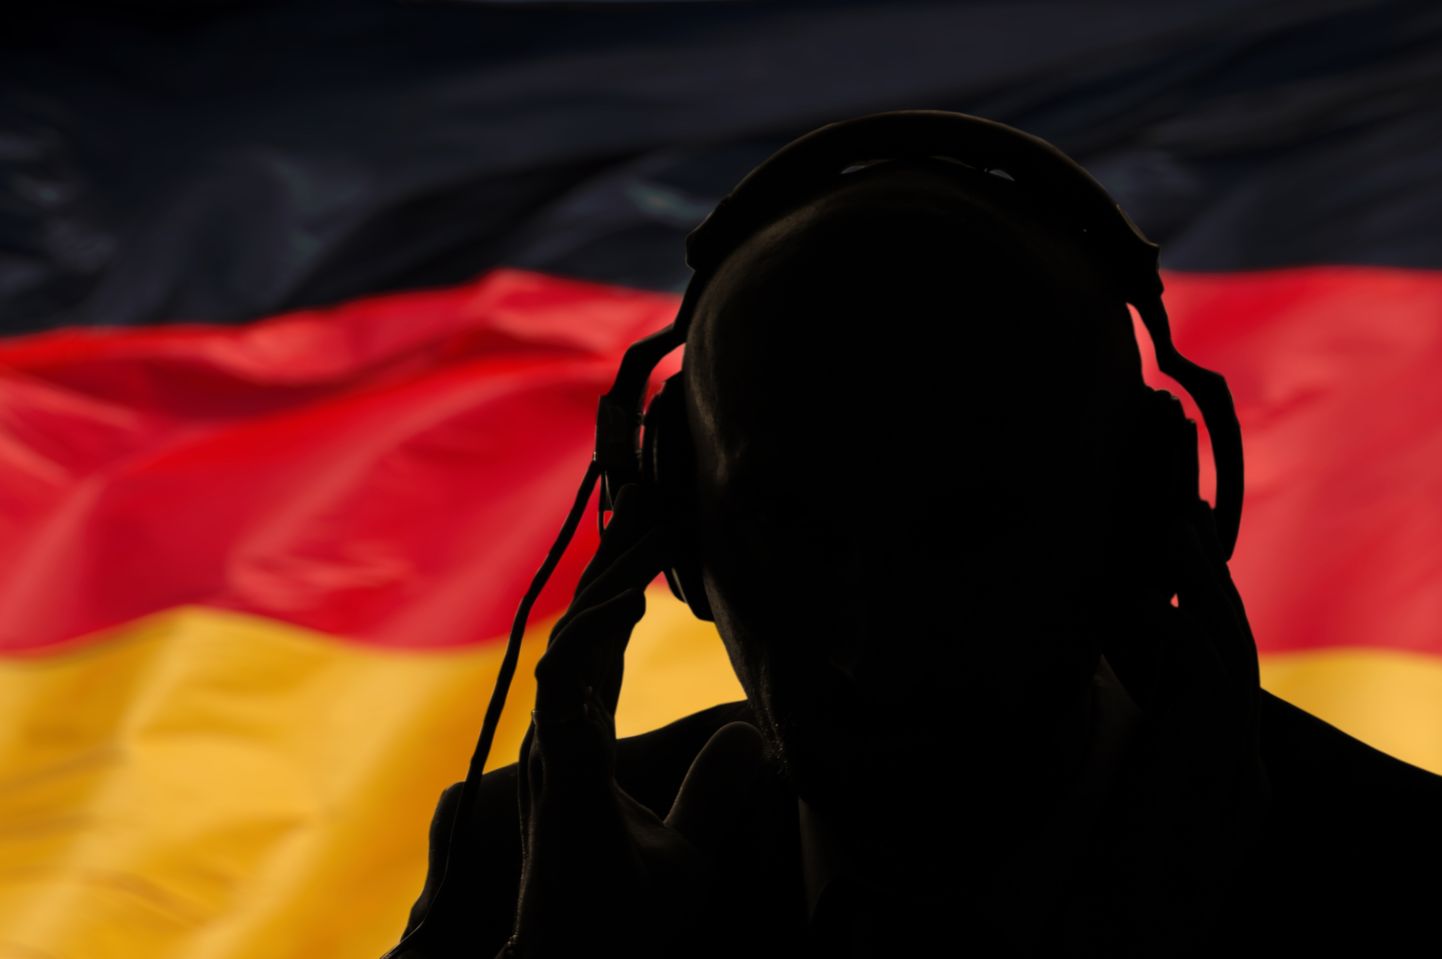 Человек в наушниках на фоне флага Германии